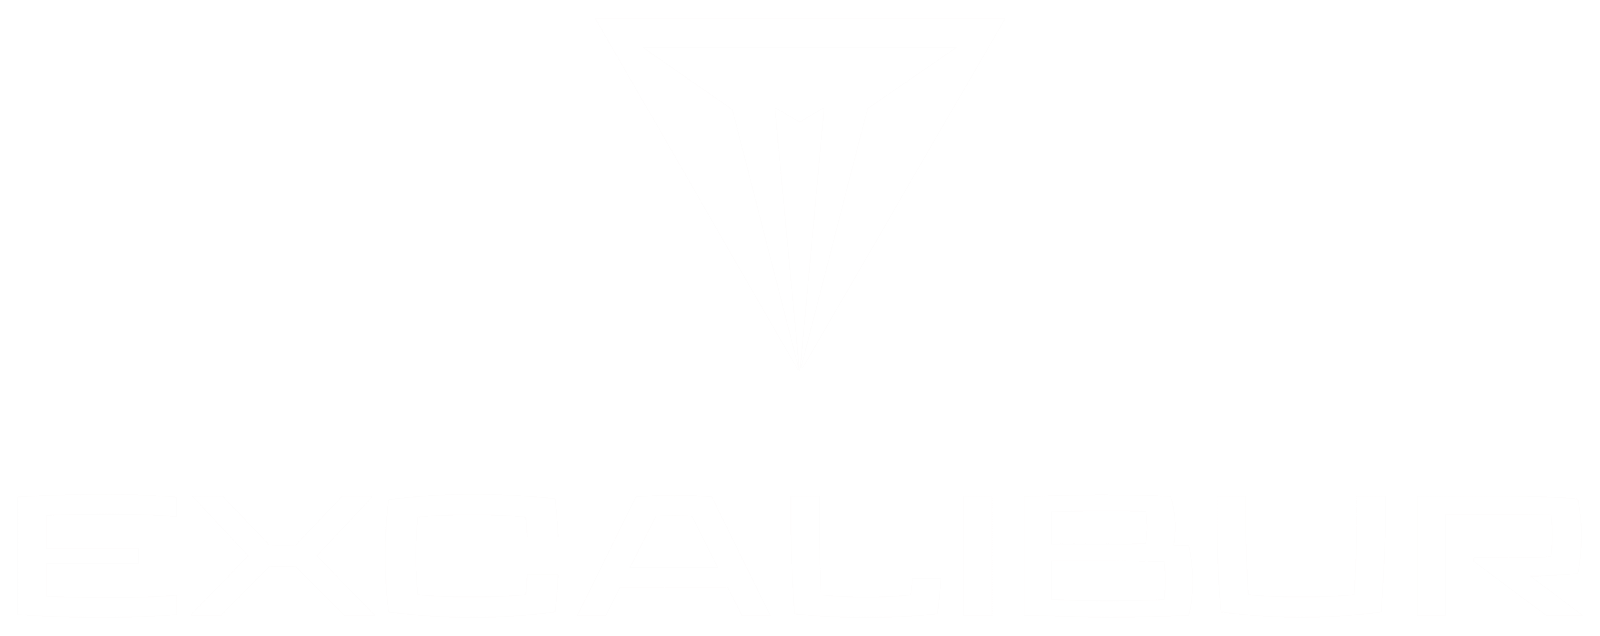 Excalibur Logo - Casper Excalibur Logo